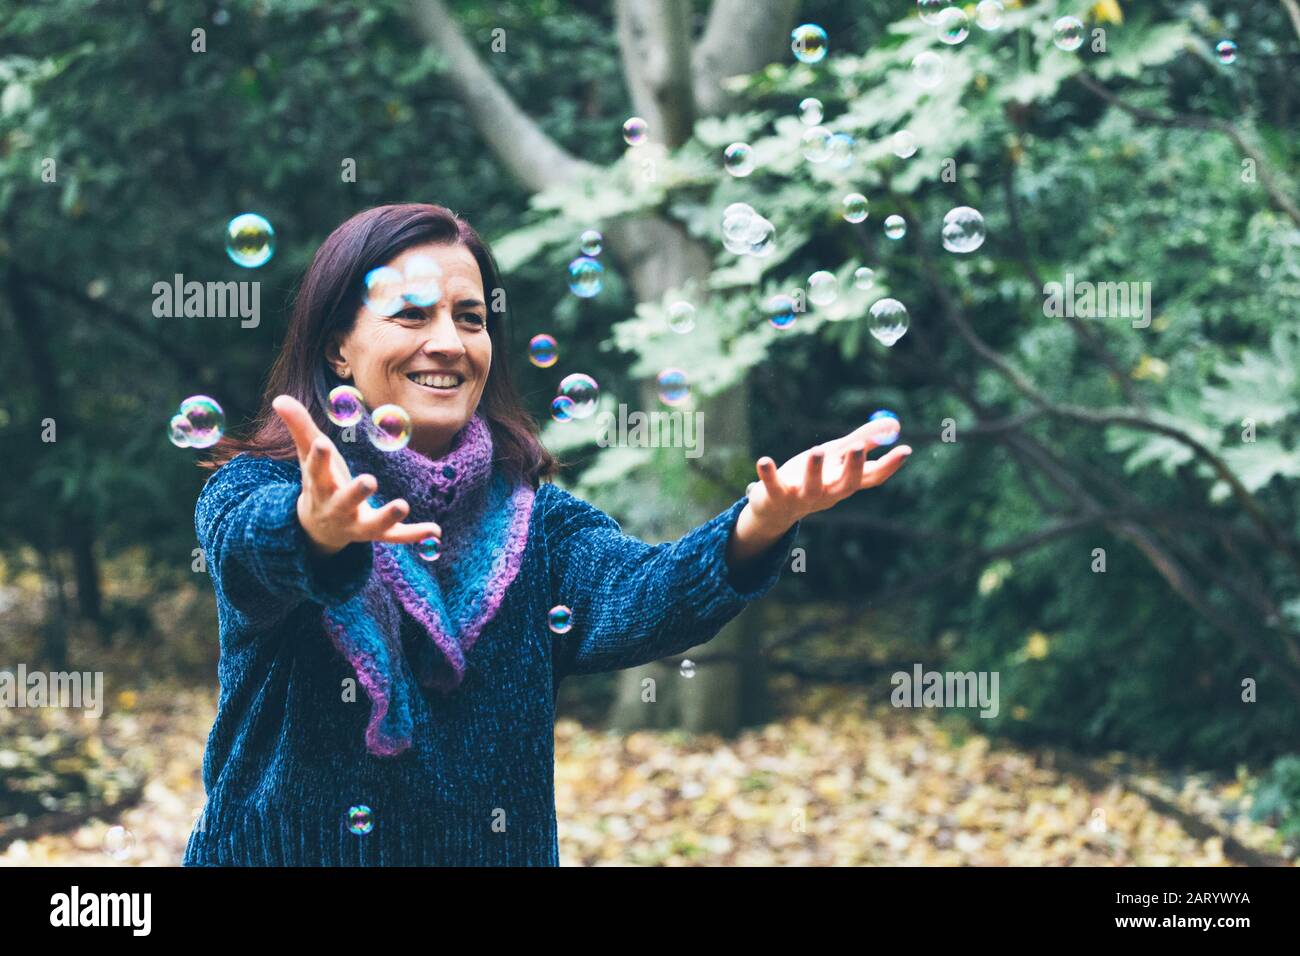 Femme souriante jouant avec des bulles Banque D'Images